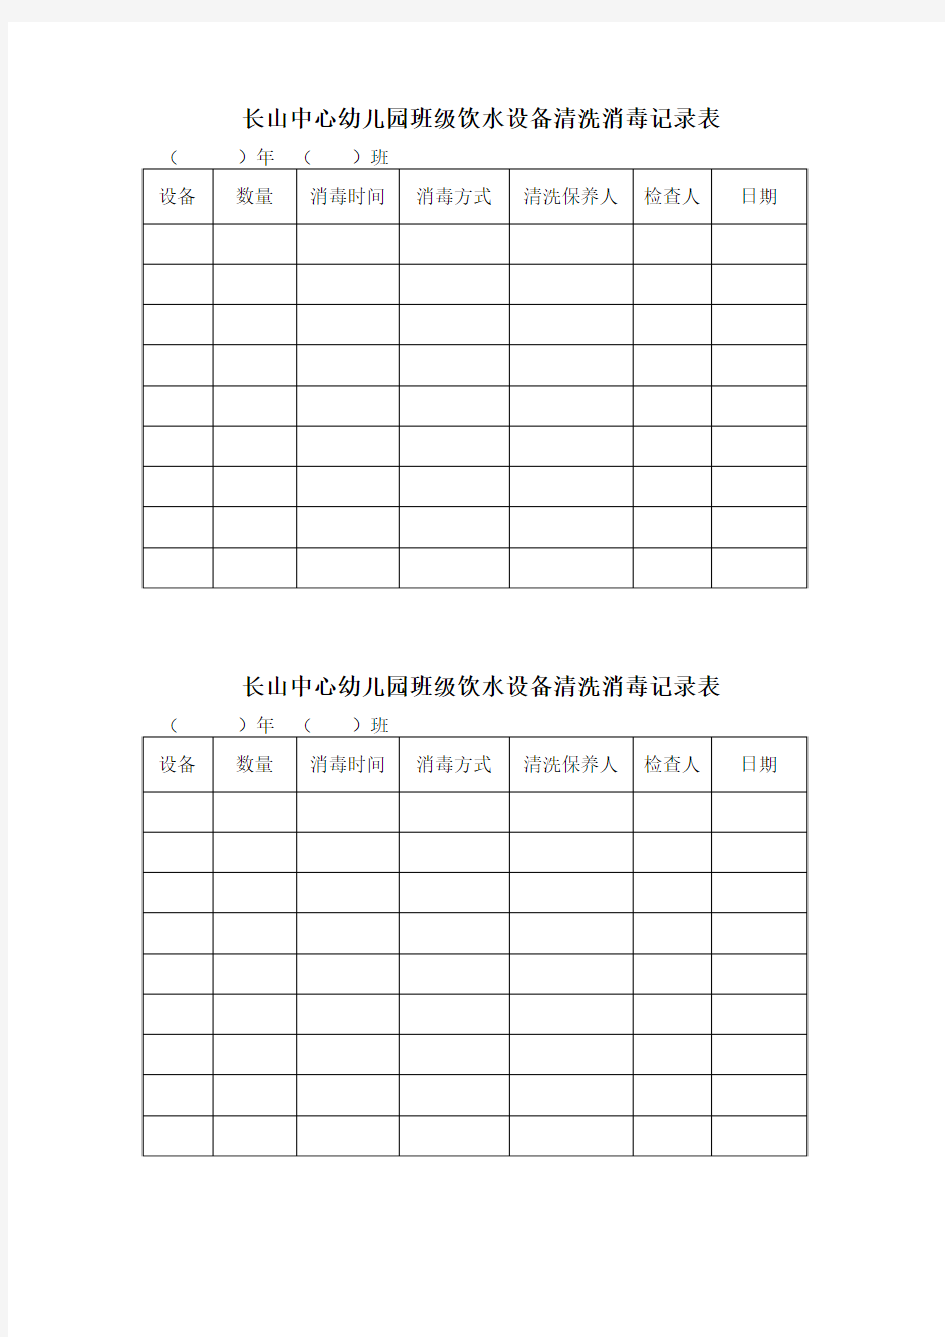 长山中心幼儿园班级饮水设备清洗消毒记录表